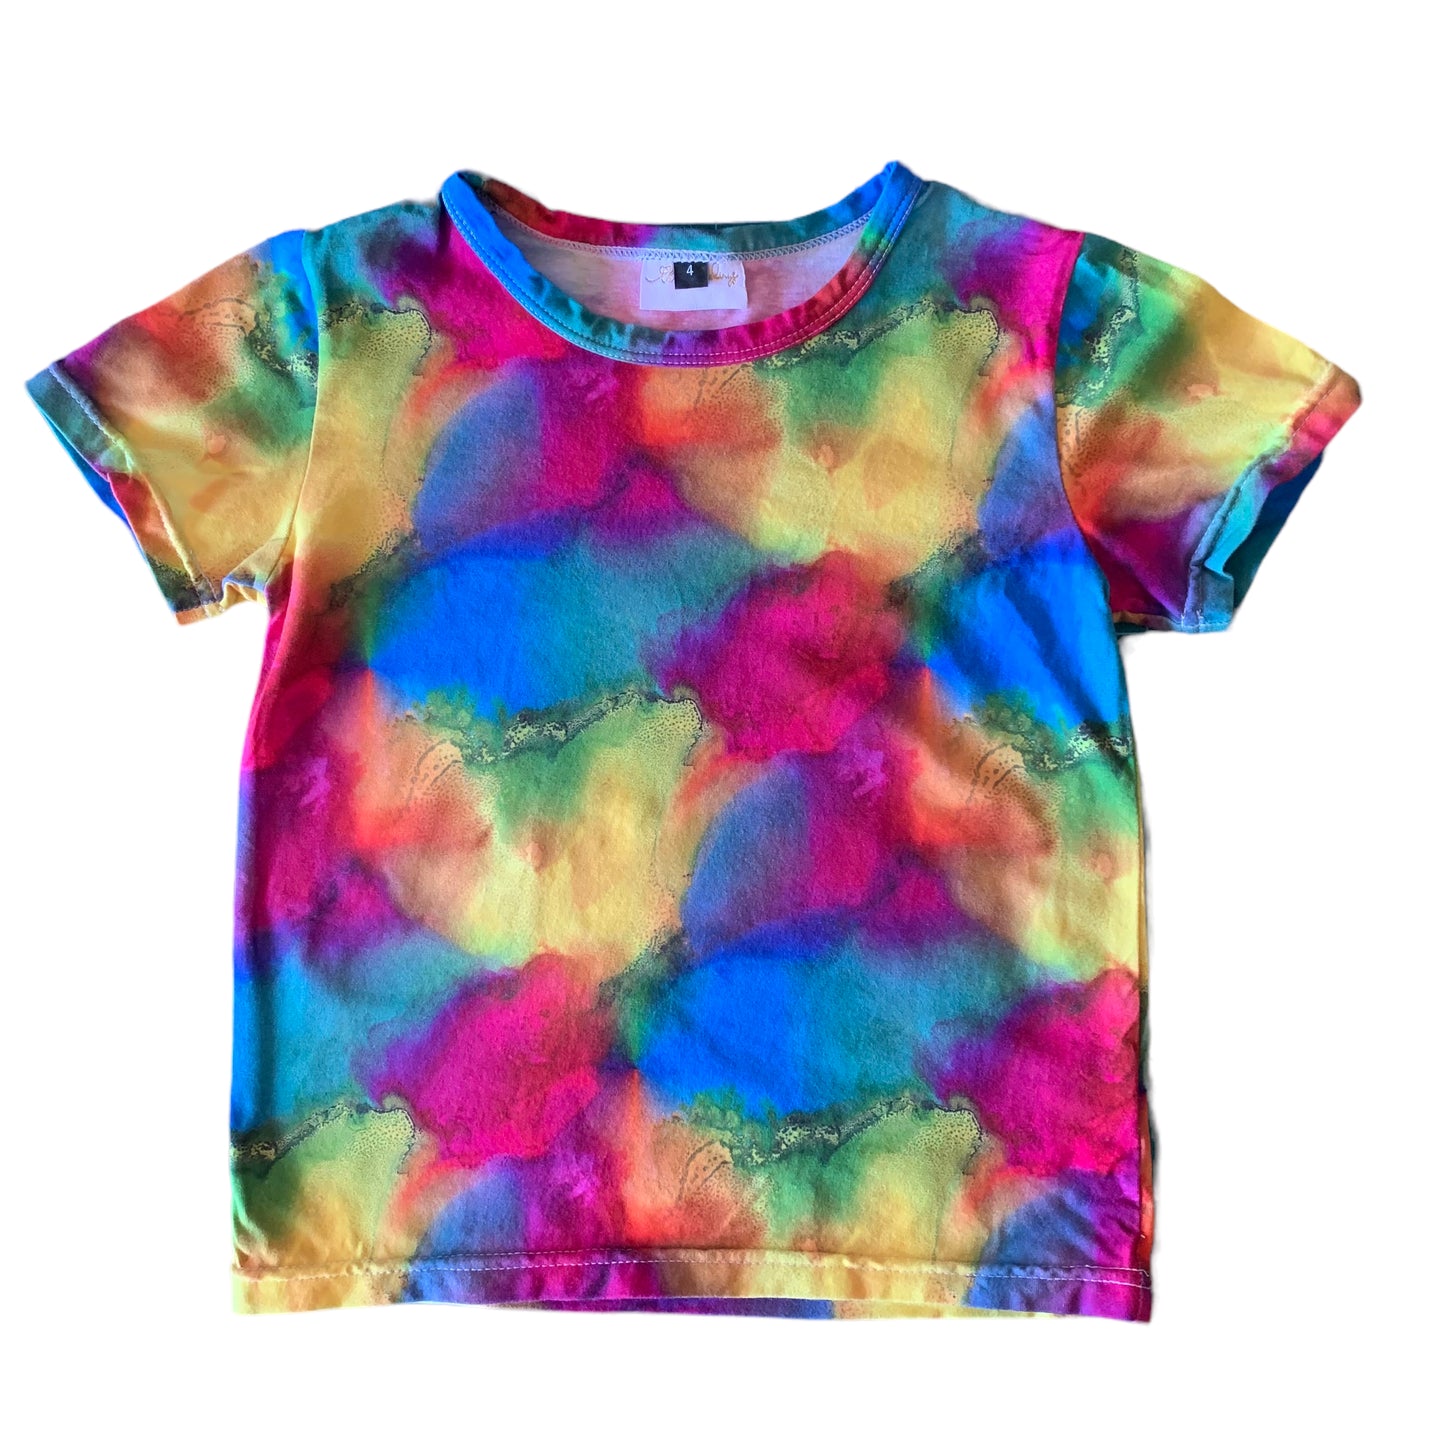 T shirt - Pilbara Rainbow